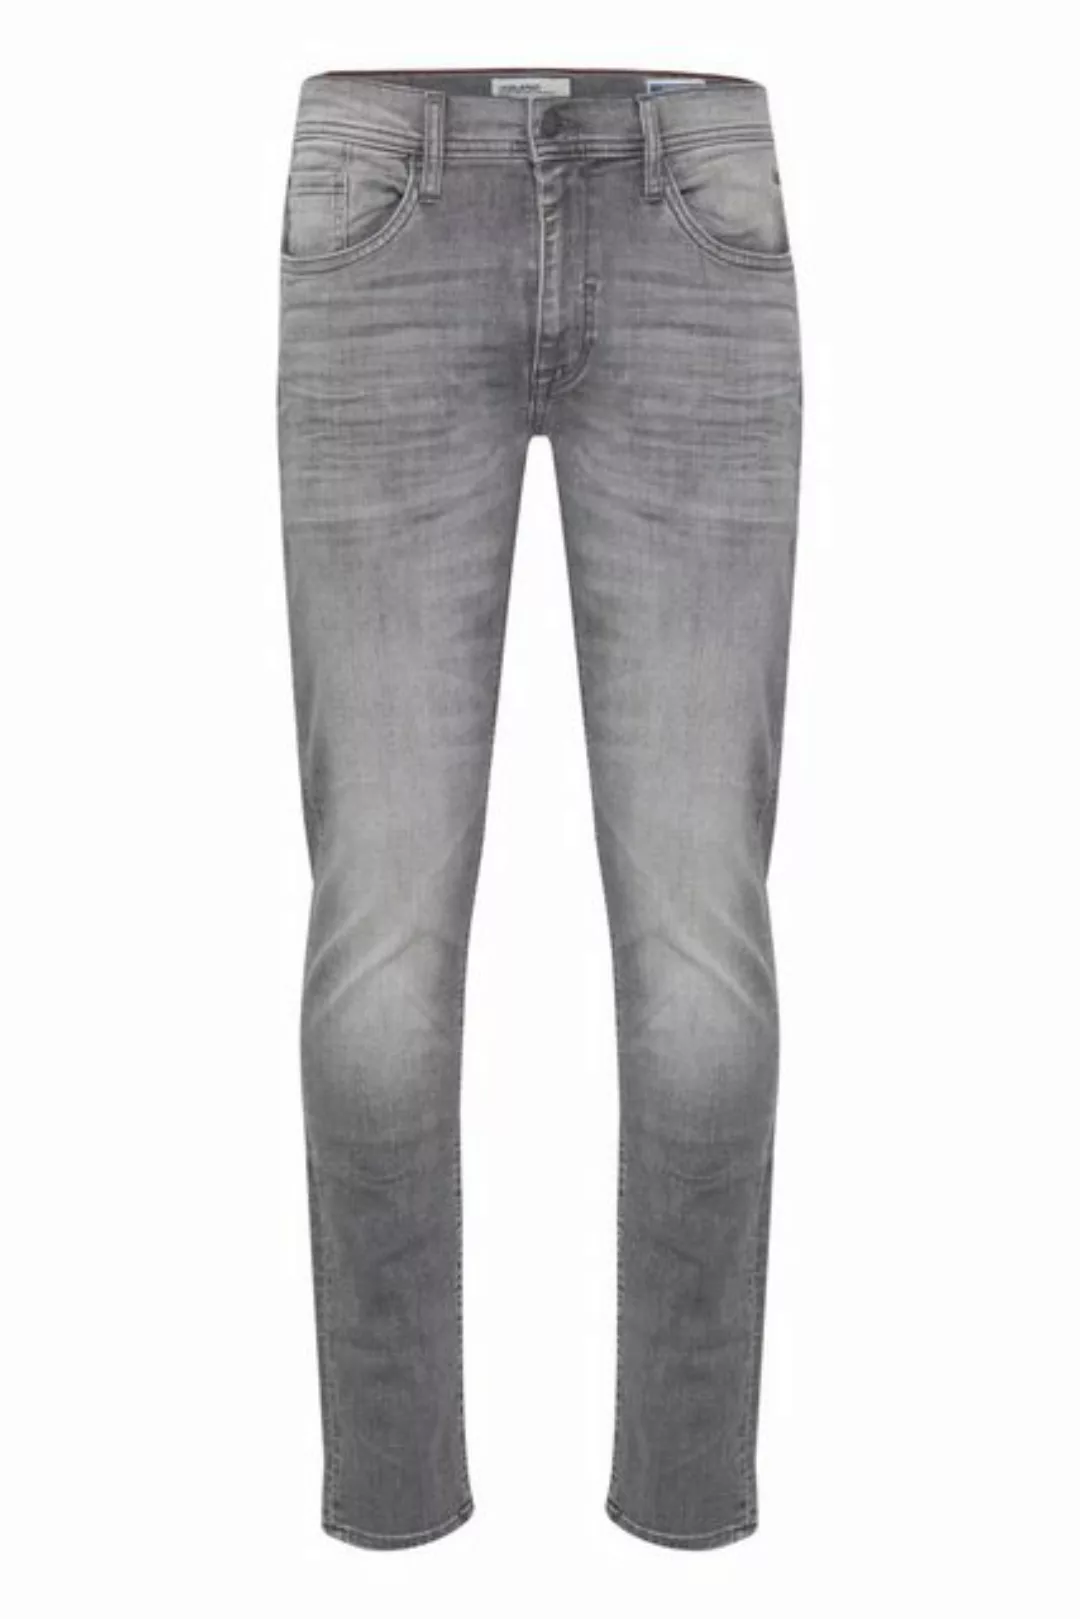 Blend 5-Pocket-Jeans BLEND JEANS TWISTER light grey denim 20712391.200294 günstig online kaufen